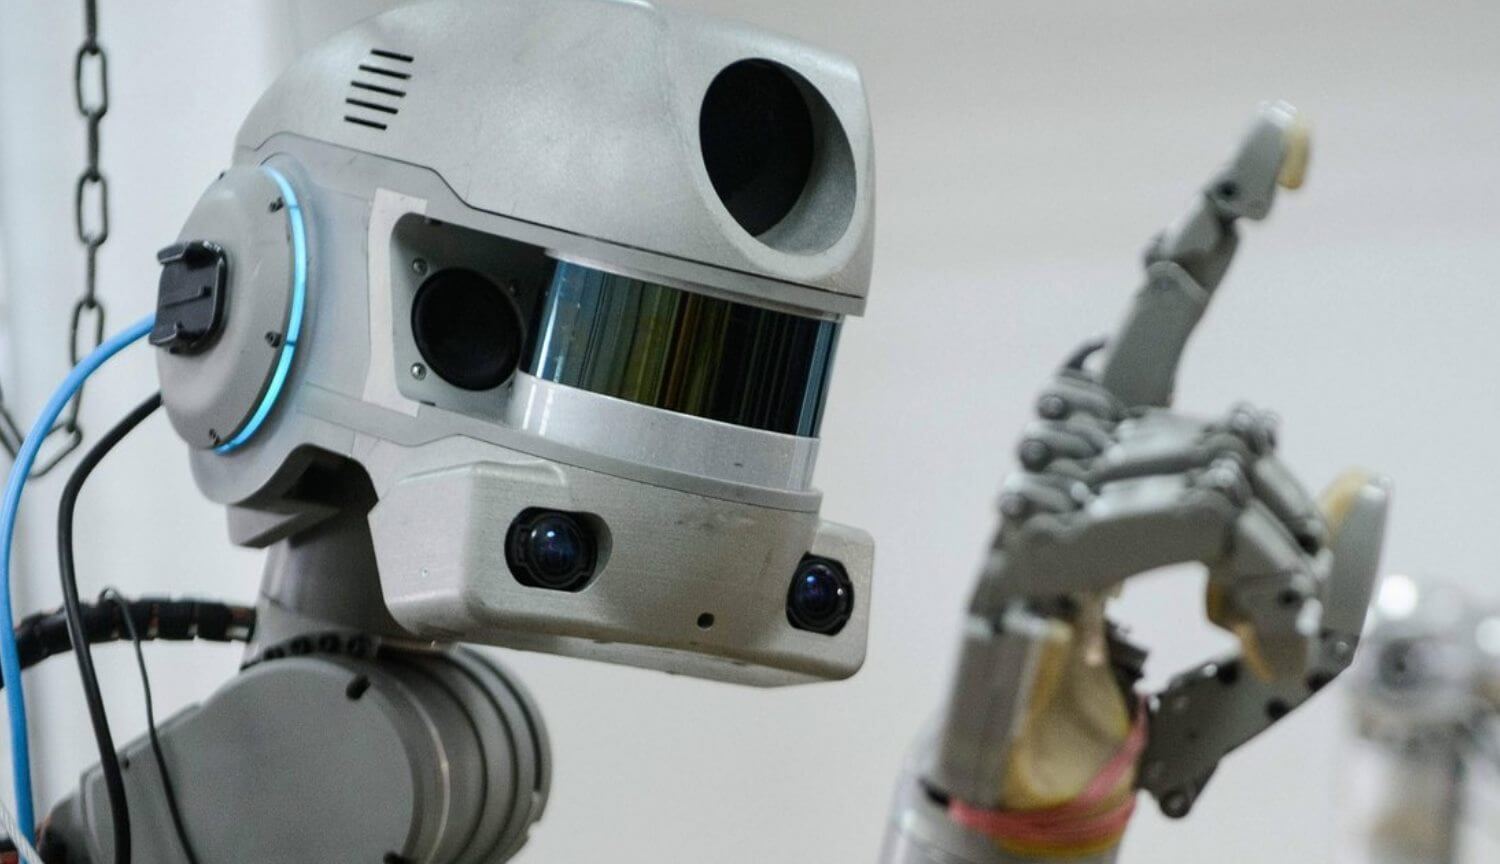 Der russische Roboter FEDOR gebeten, ihm den Namen zu tauschen und startete Twitter